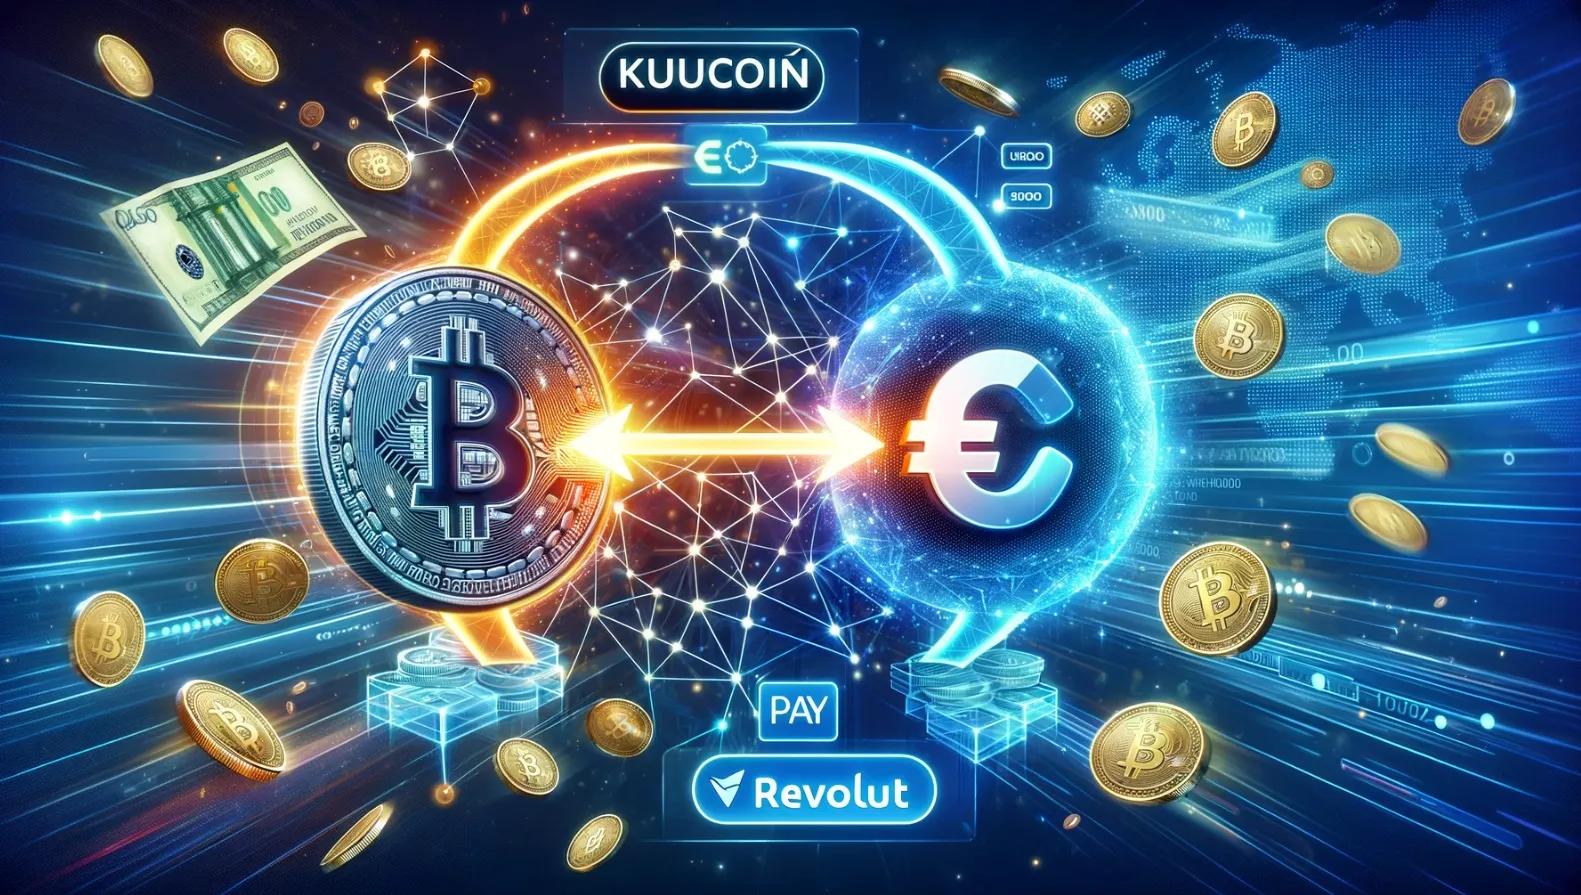 Ilustración con IA de compra de criptomonedas en euros en Kucoin a través de Revolut Pay